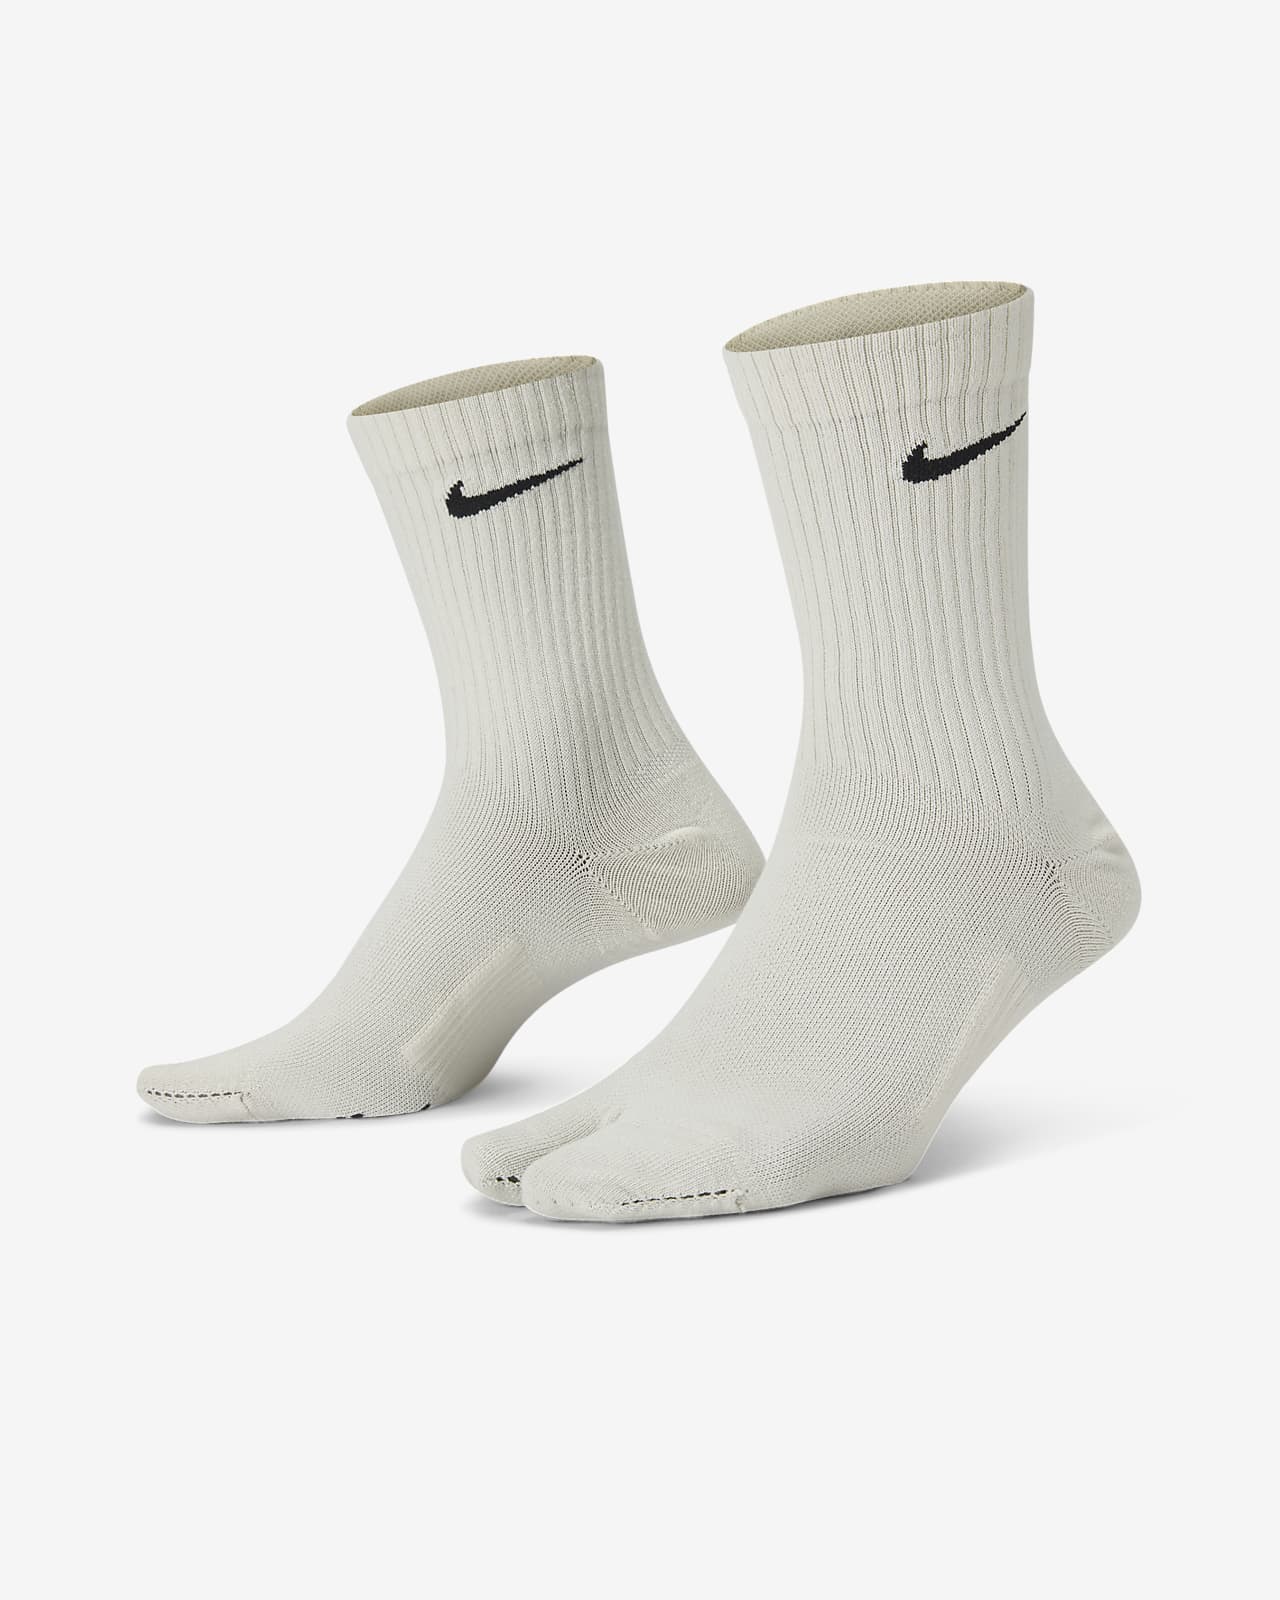 Calcetines deportivos Nike 100% algodón Puro largo respirable Casual para  hombre y mujer Combina con todo algodón